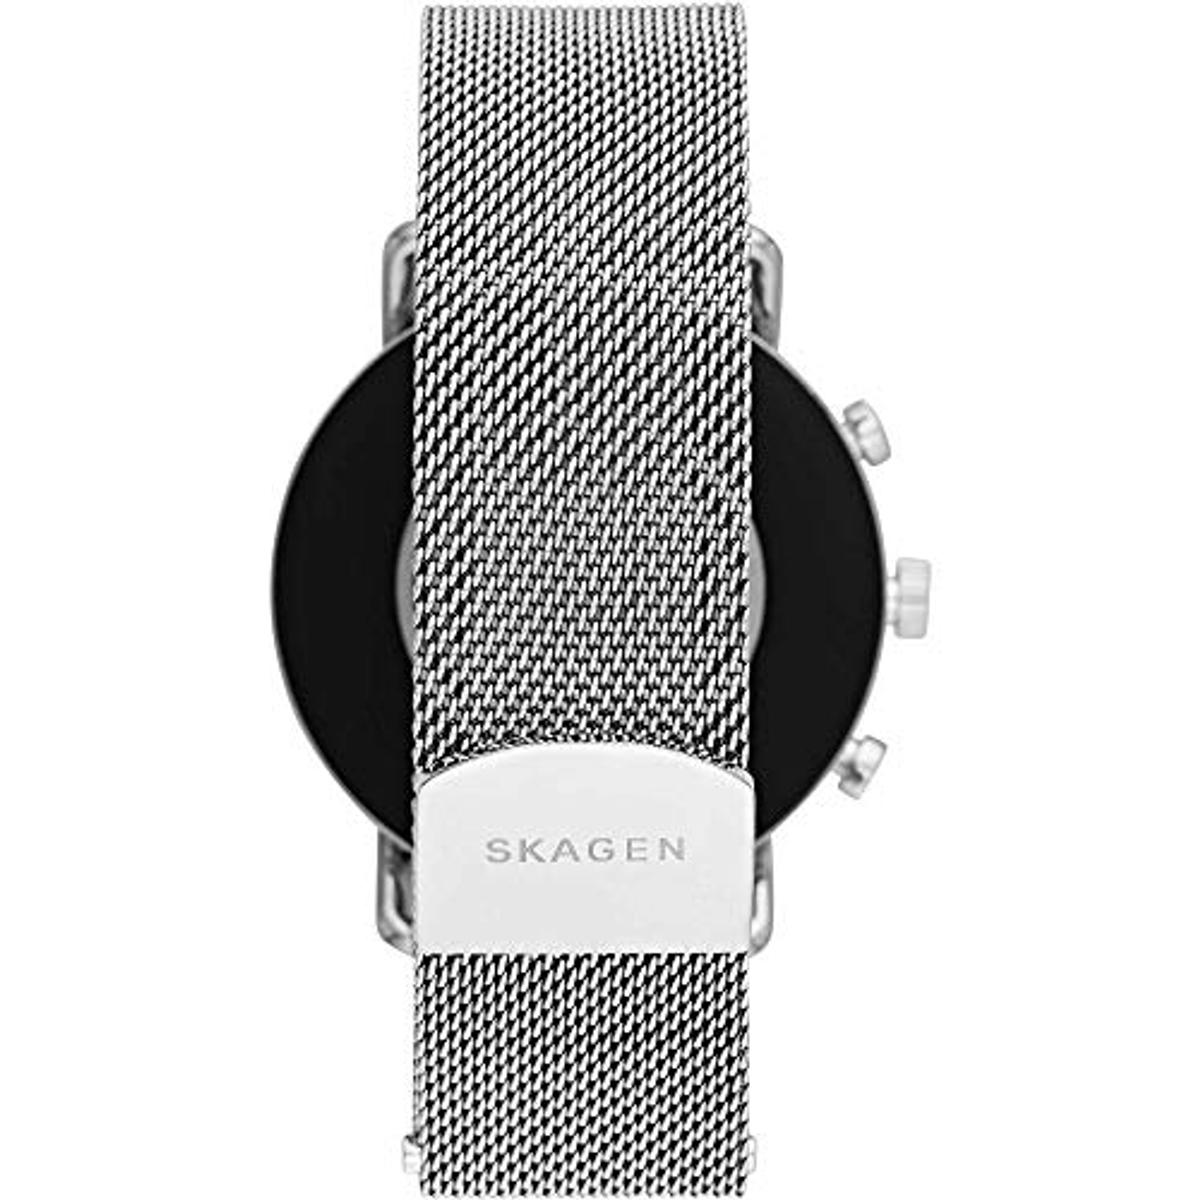 SKAGEN Smartwatch Skagen SKT5102 Smartwatch silicone, Silver/Black mm, Edelstahl 185